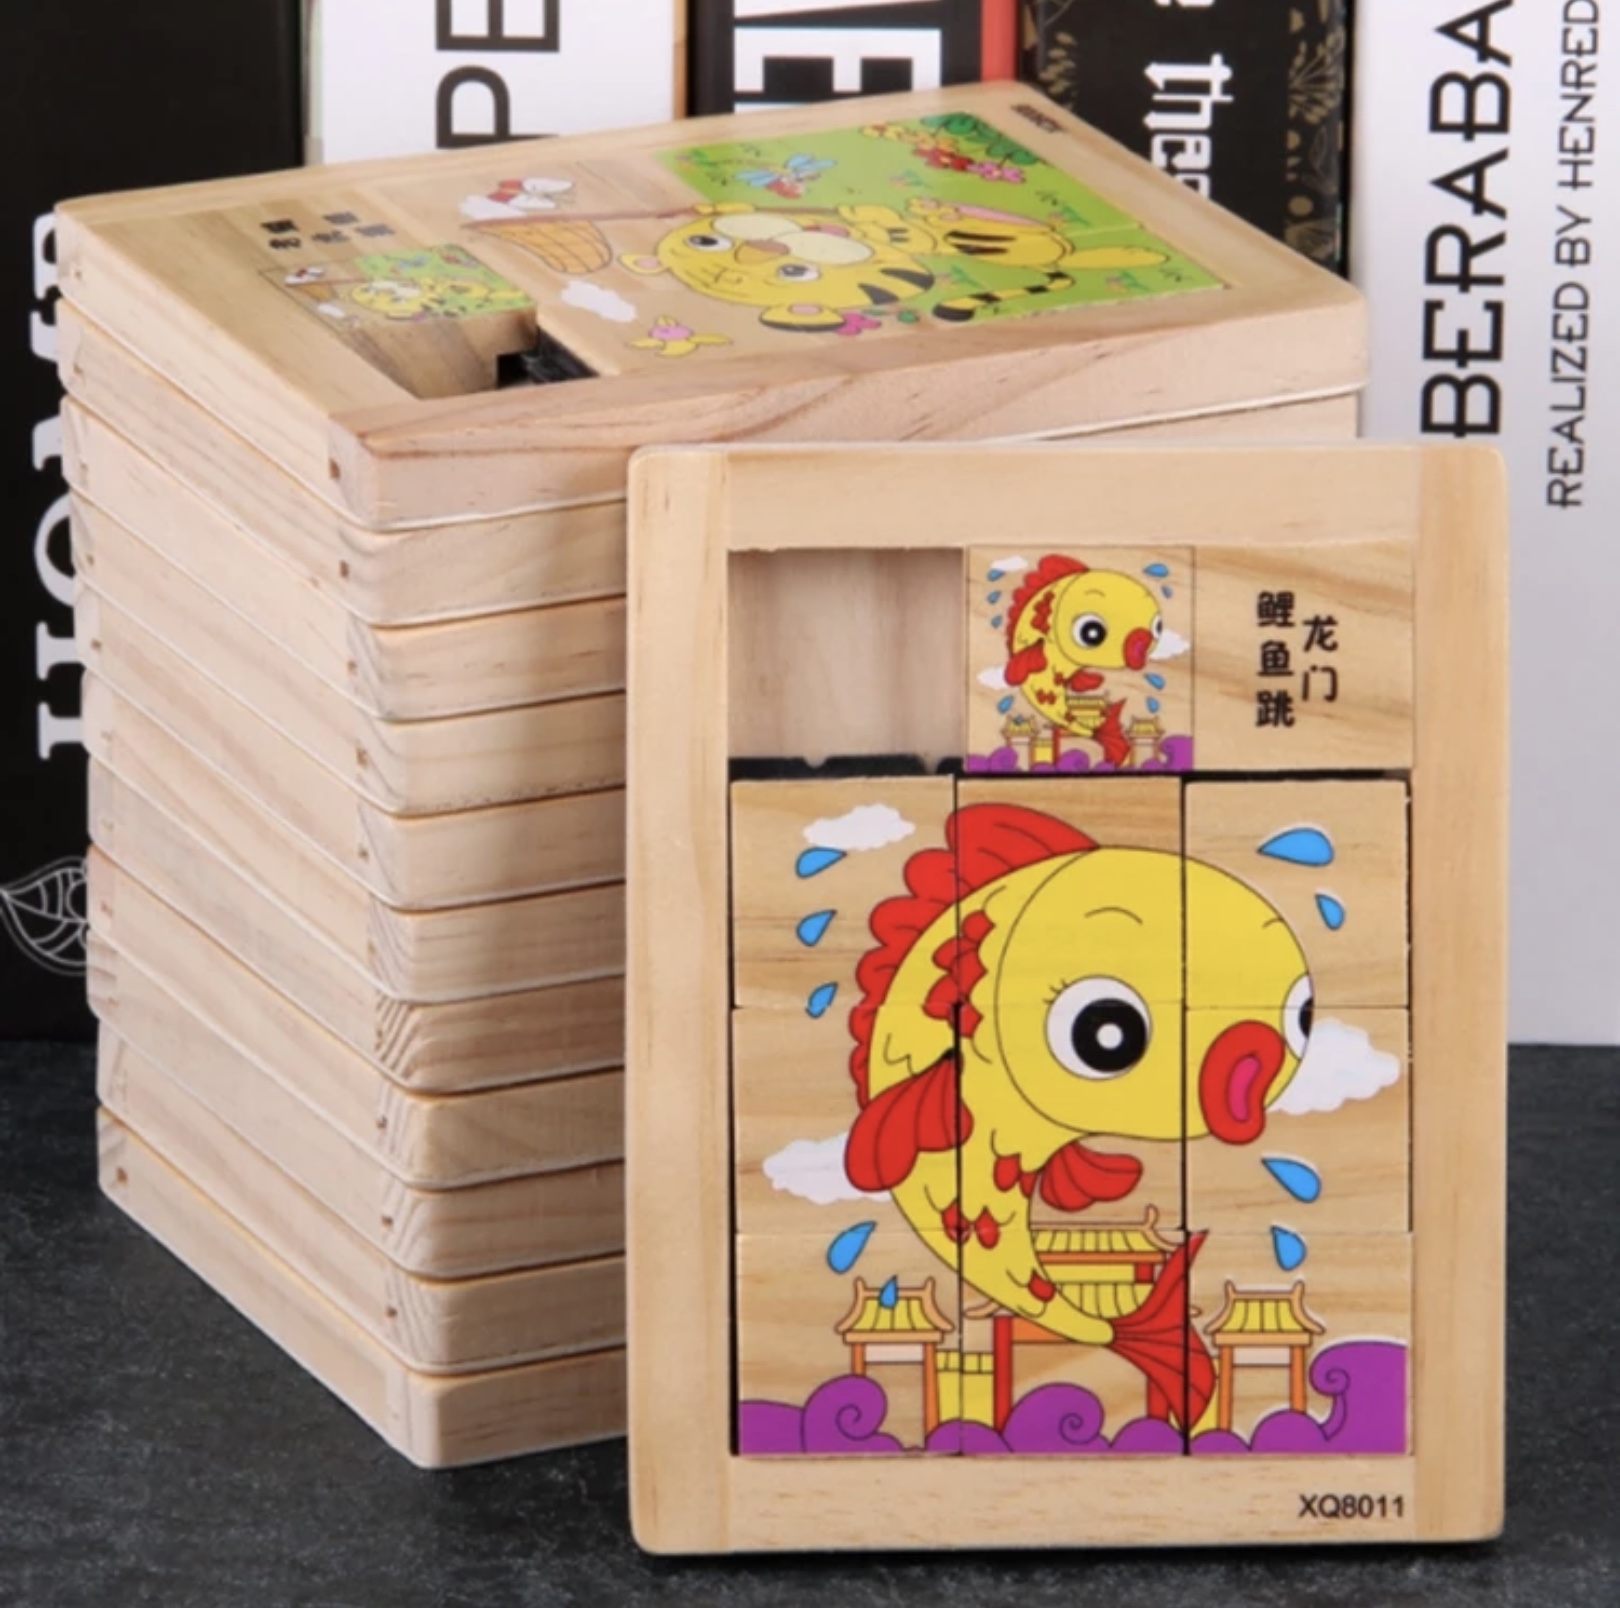 Puzzle din lemn de tip tabletă cu animale domestice și sălbatice pentru copii de vârstă trei ani